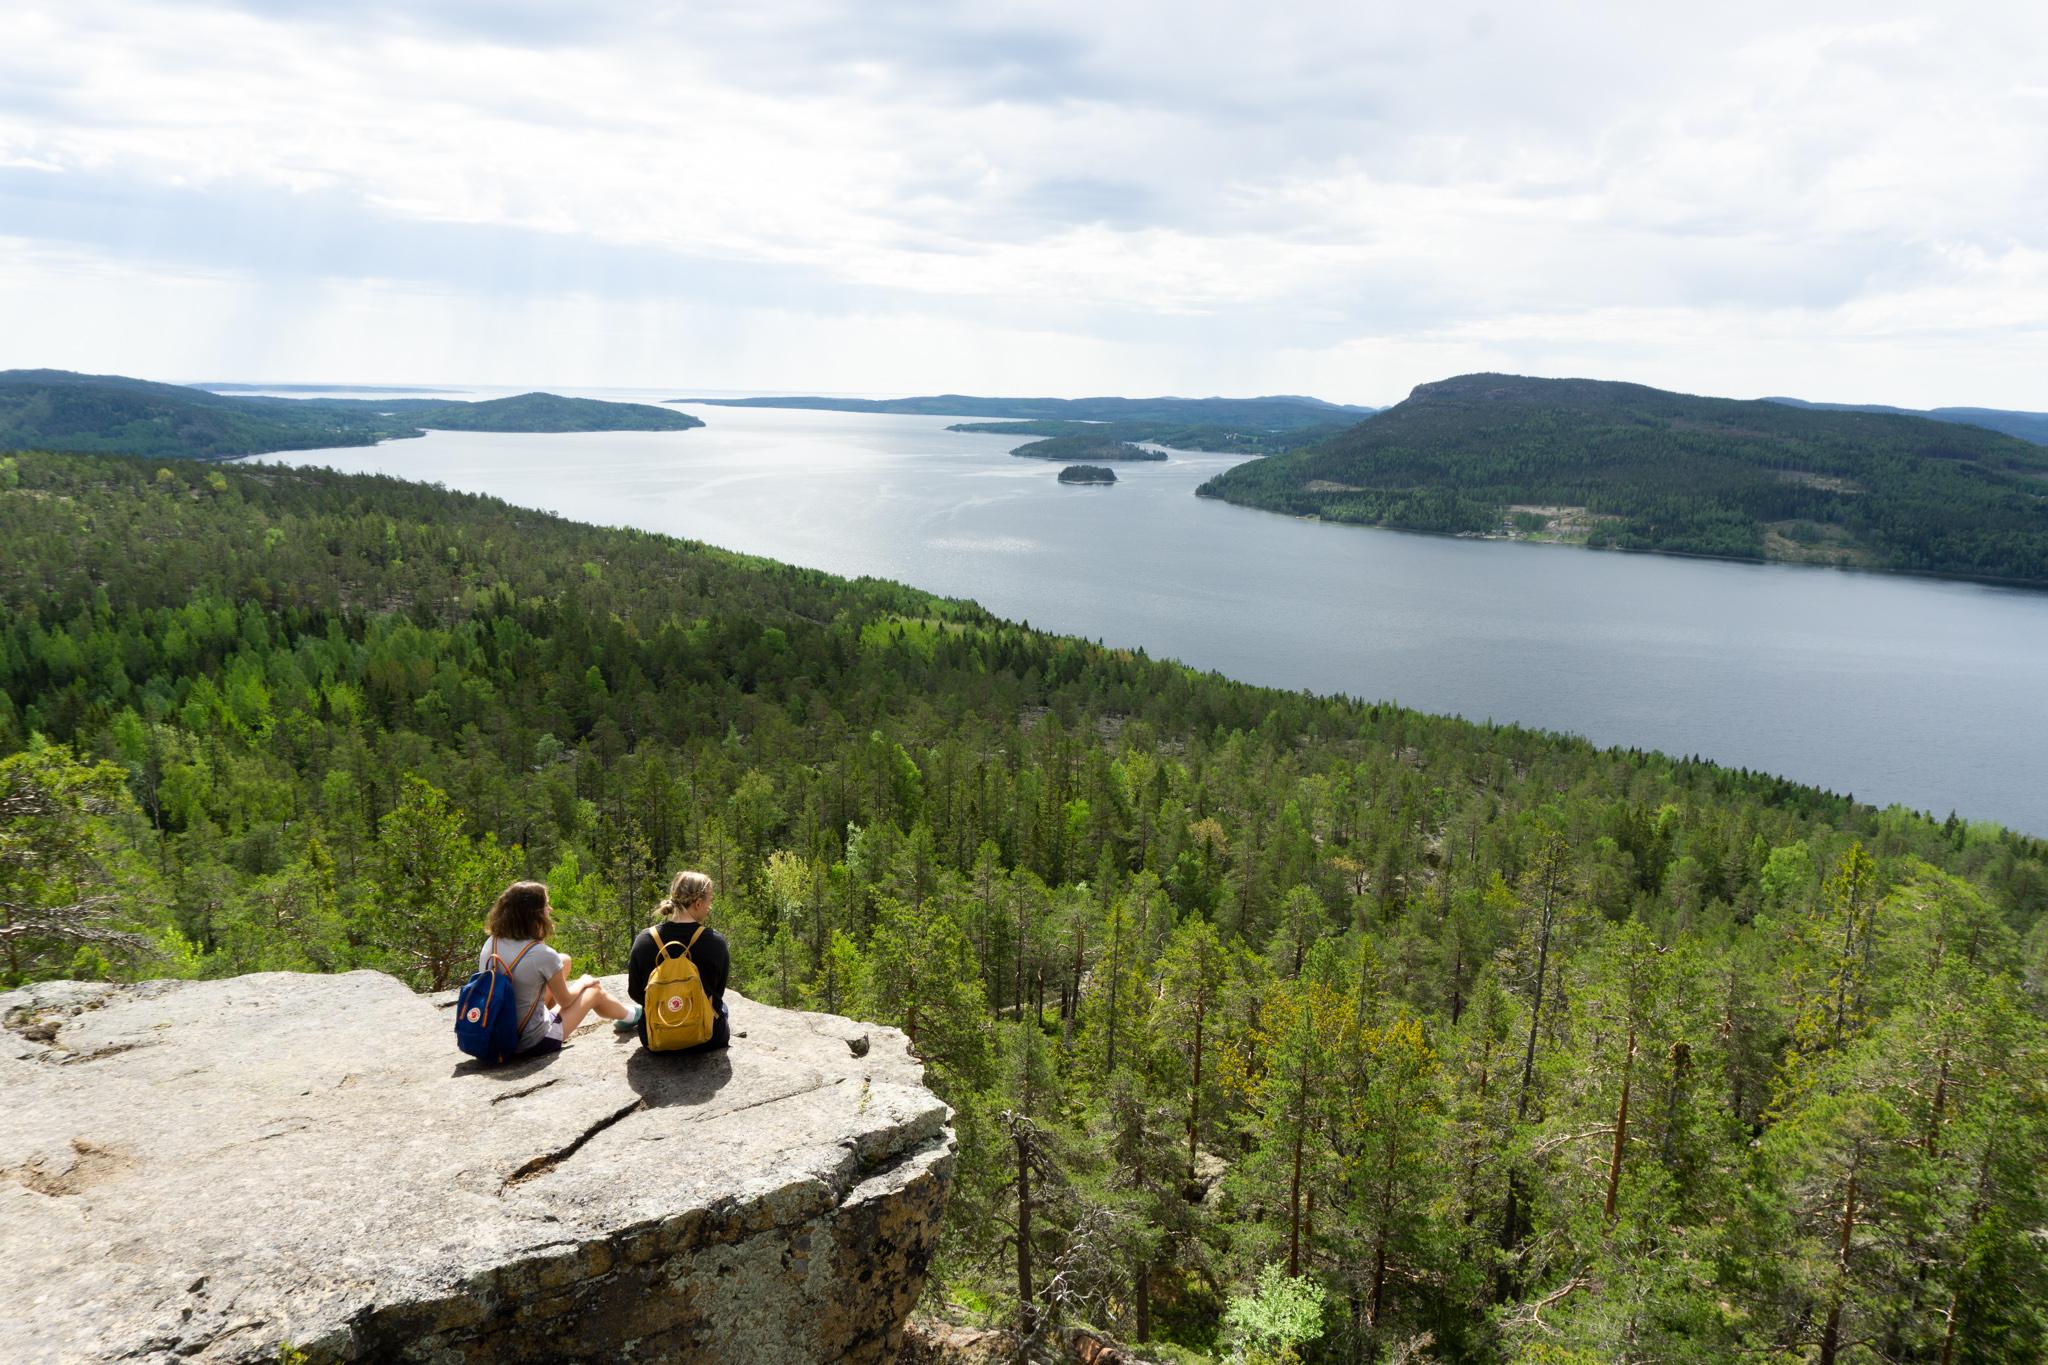 Två personer med ryggsäckar sitter på en klippavsats med utsikt över skog och en stor sjö.